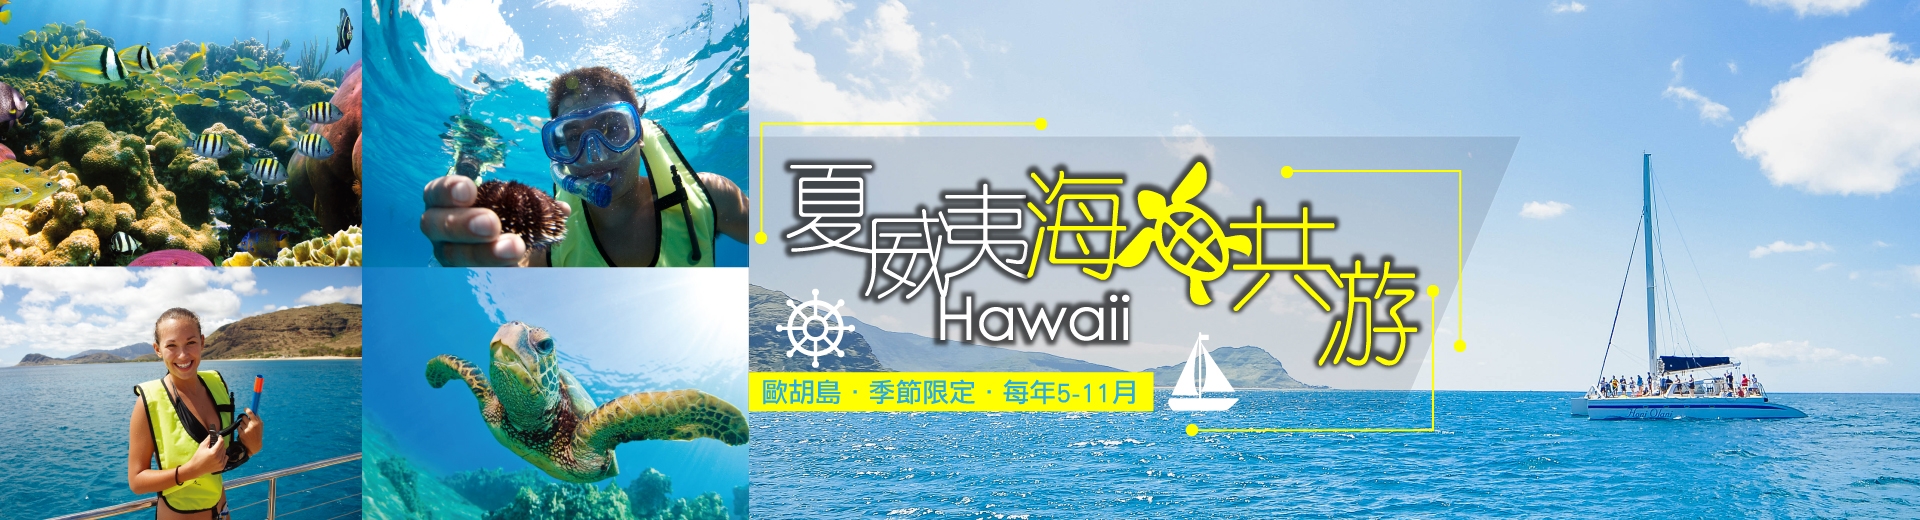 鈦美旅行社-夏威夷旅遊、夏威夷住宿推薦